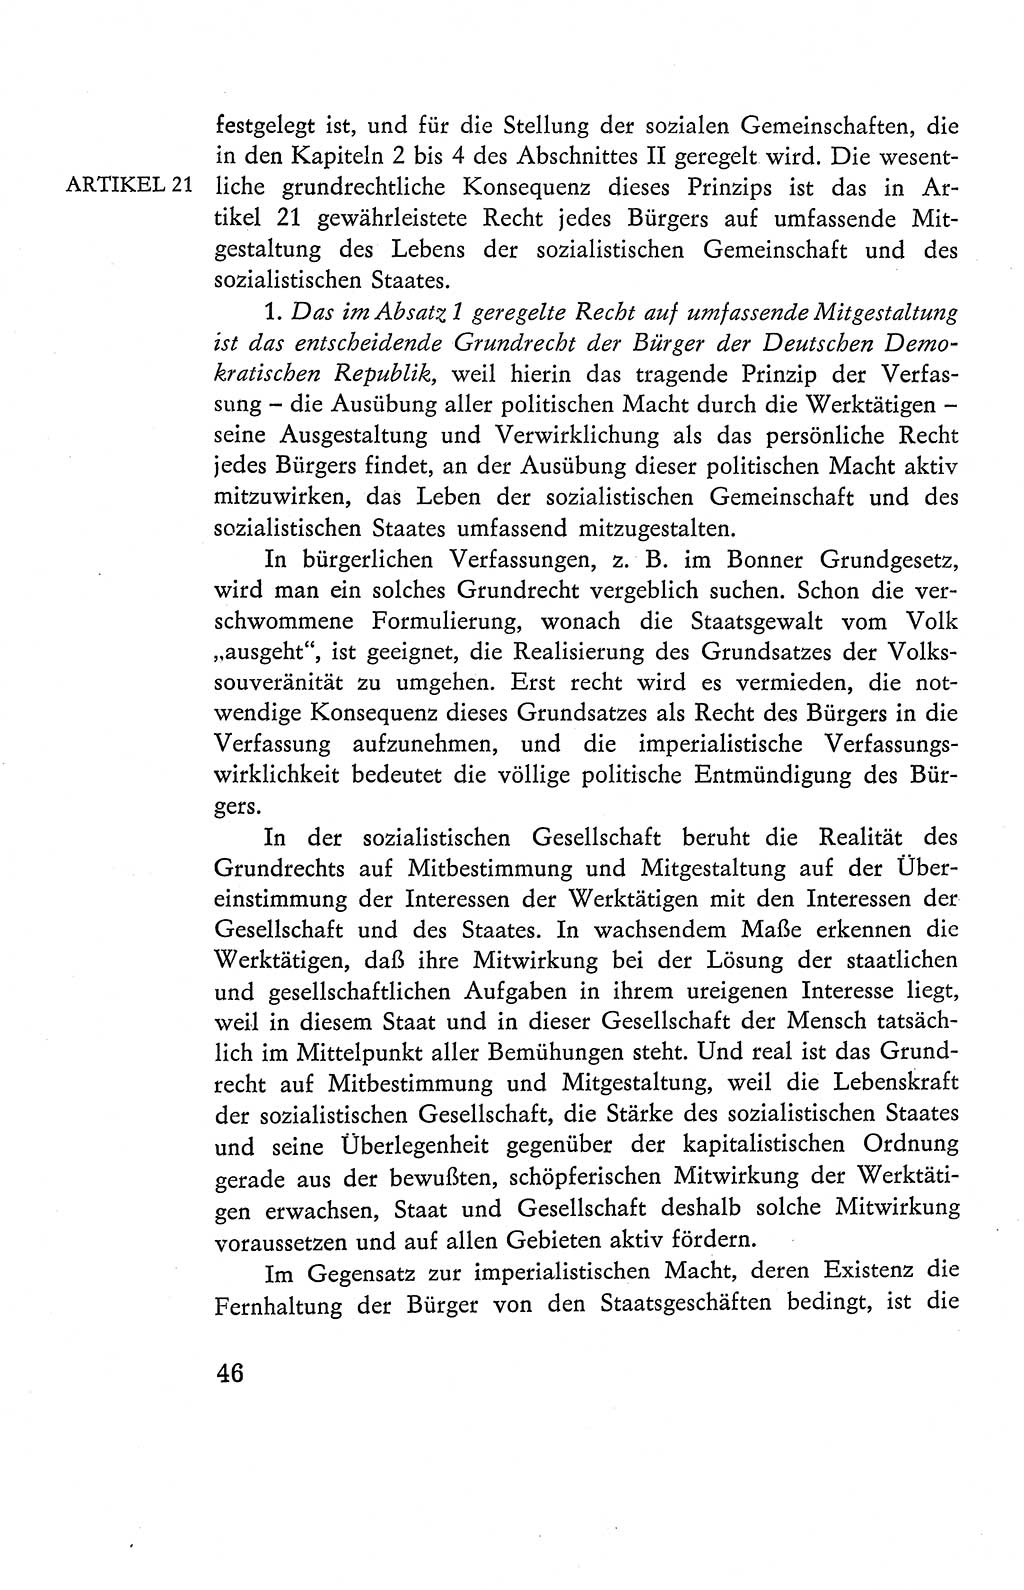 Verfassung der Deutschen Demokratischen Republik (DDR), Dokumente, Kommentar 1969, Band 2, Seite 46 (Verf. DDR Dok. Komm. 1969, Bd. 2, S. 46)